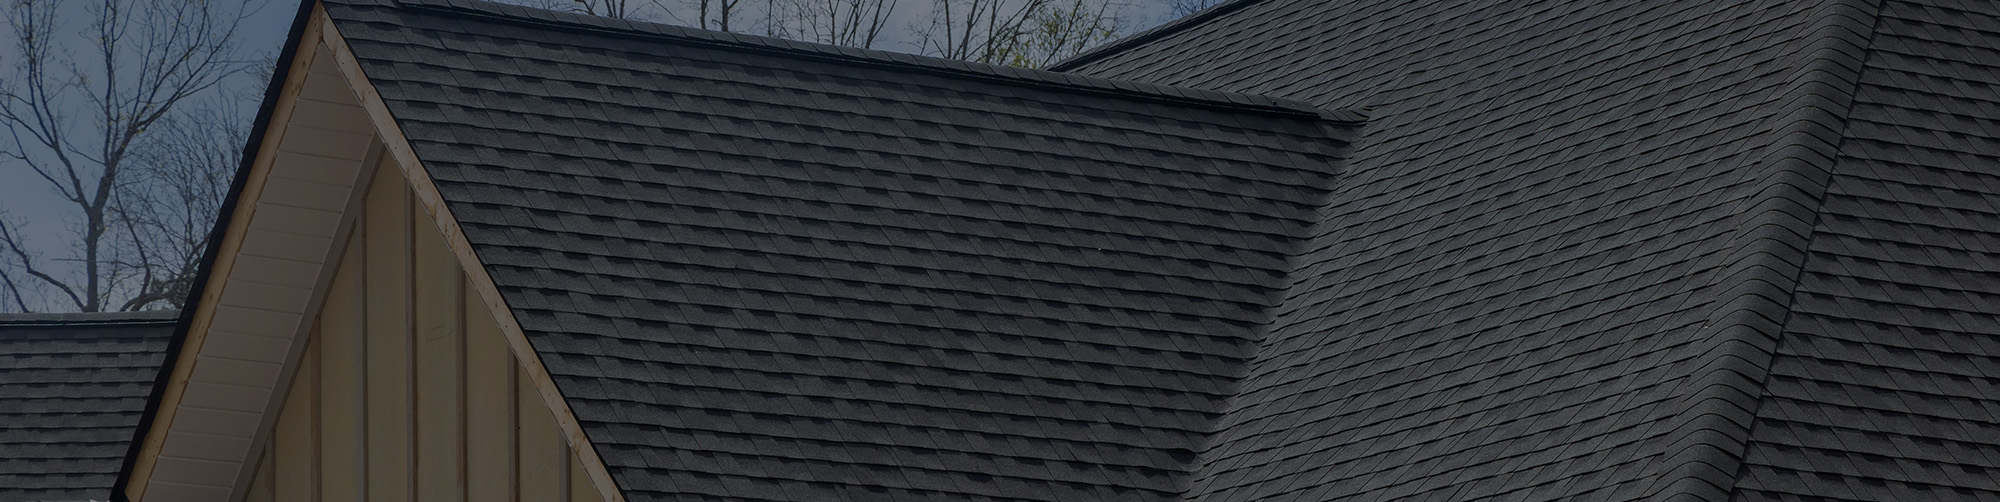 Asphalt Roofing Installation in West Michigan